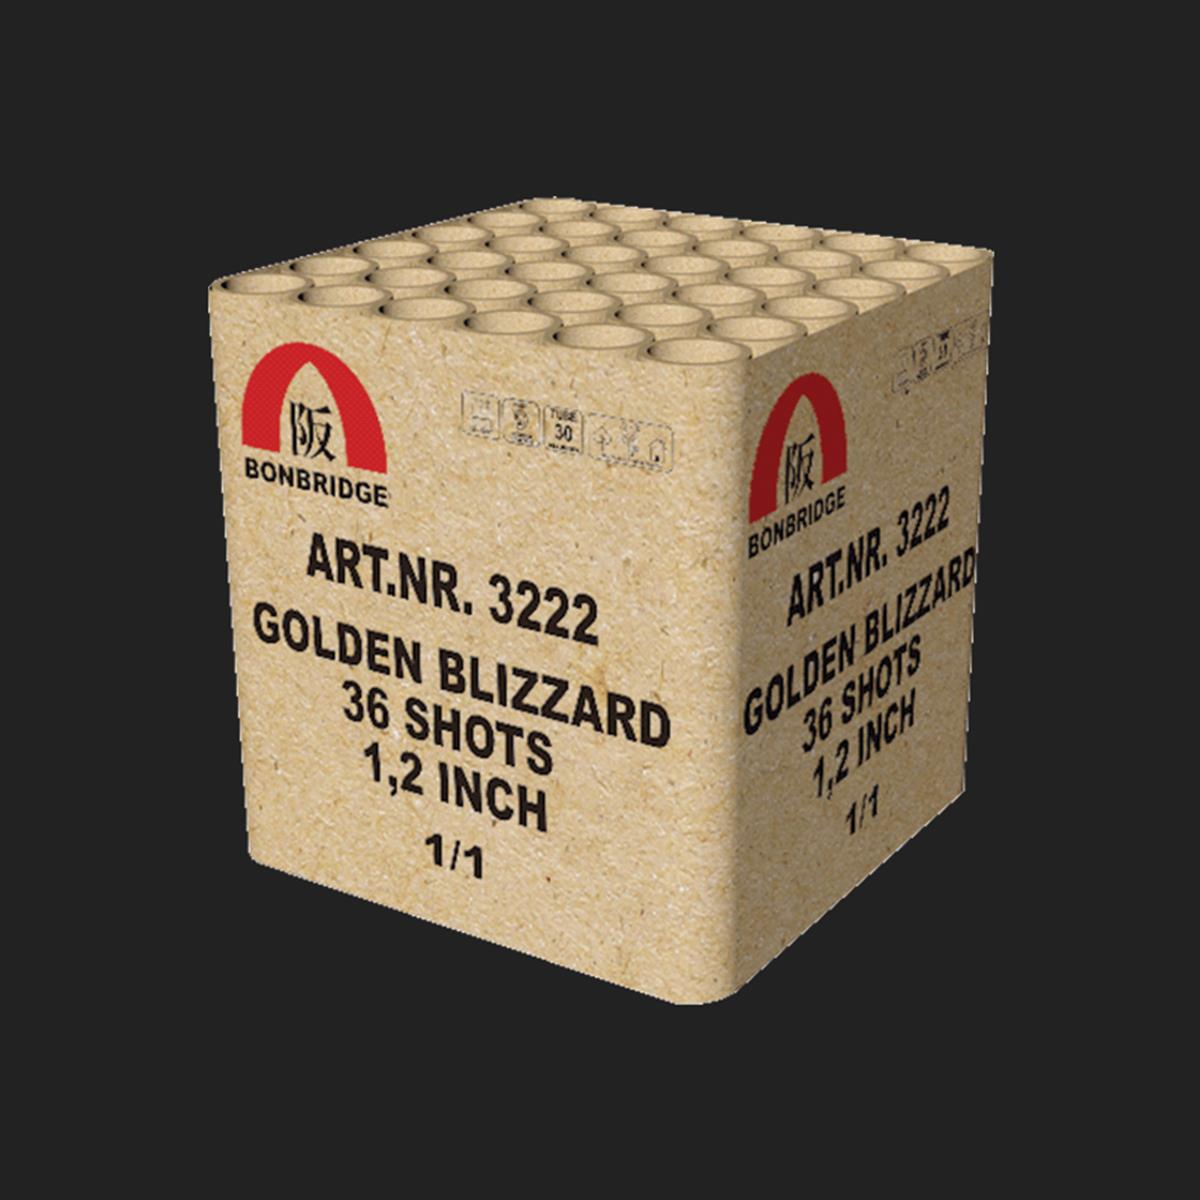 GOLDEN BLIZZARD - 36 SHOTS